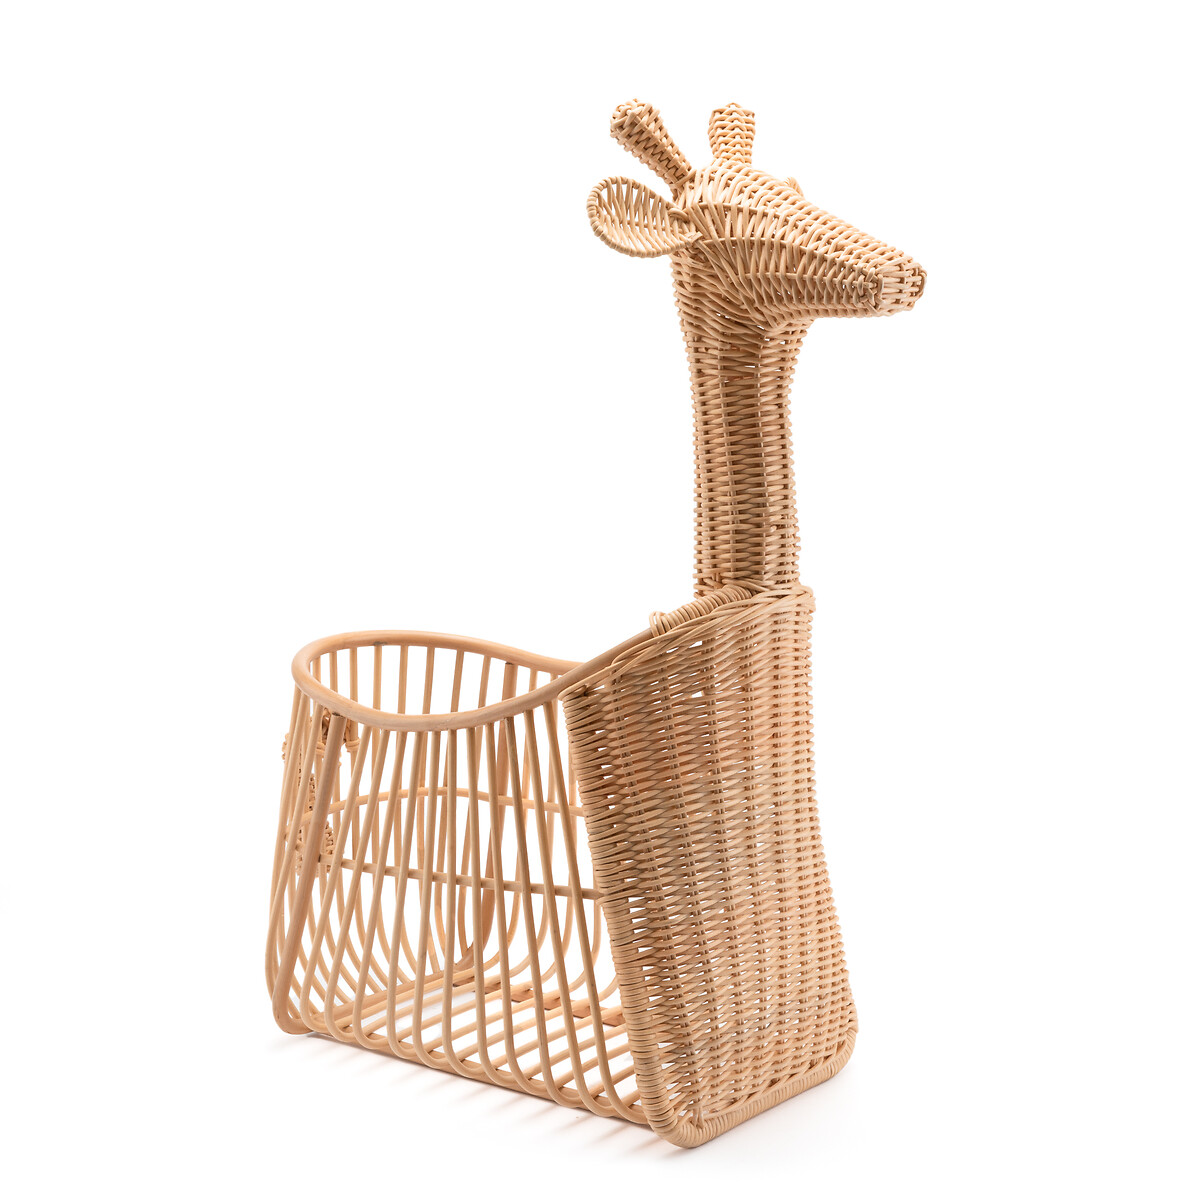 Корзинка Из плетеного ротанга в форме жирафа Zari единый размер бежевый LaRedoute - фото 1